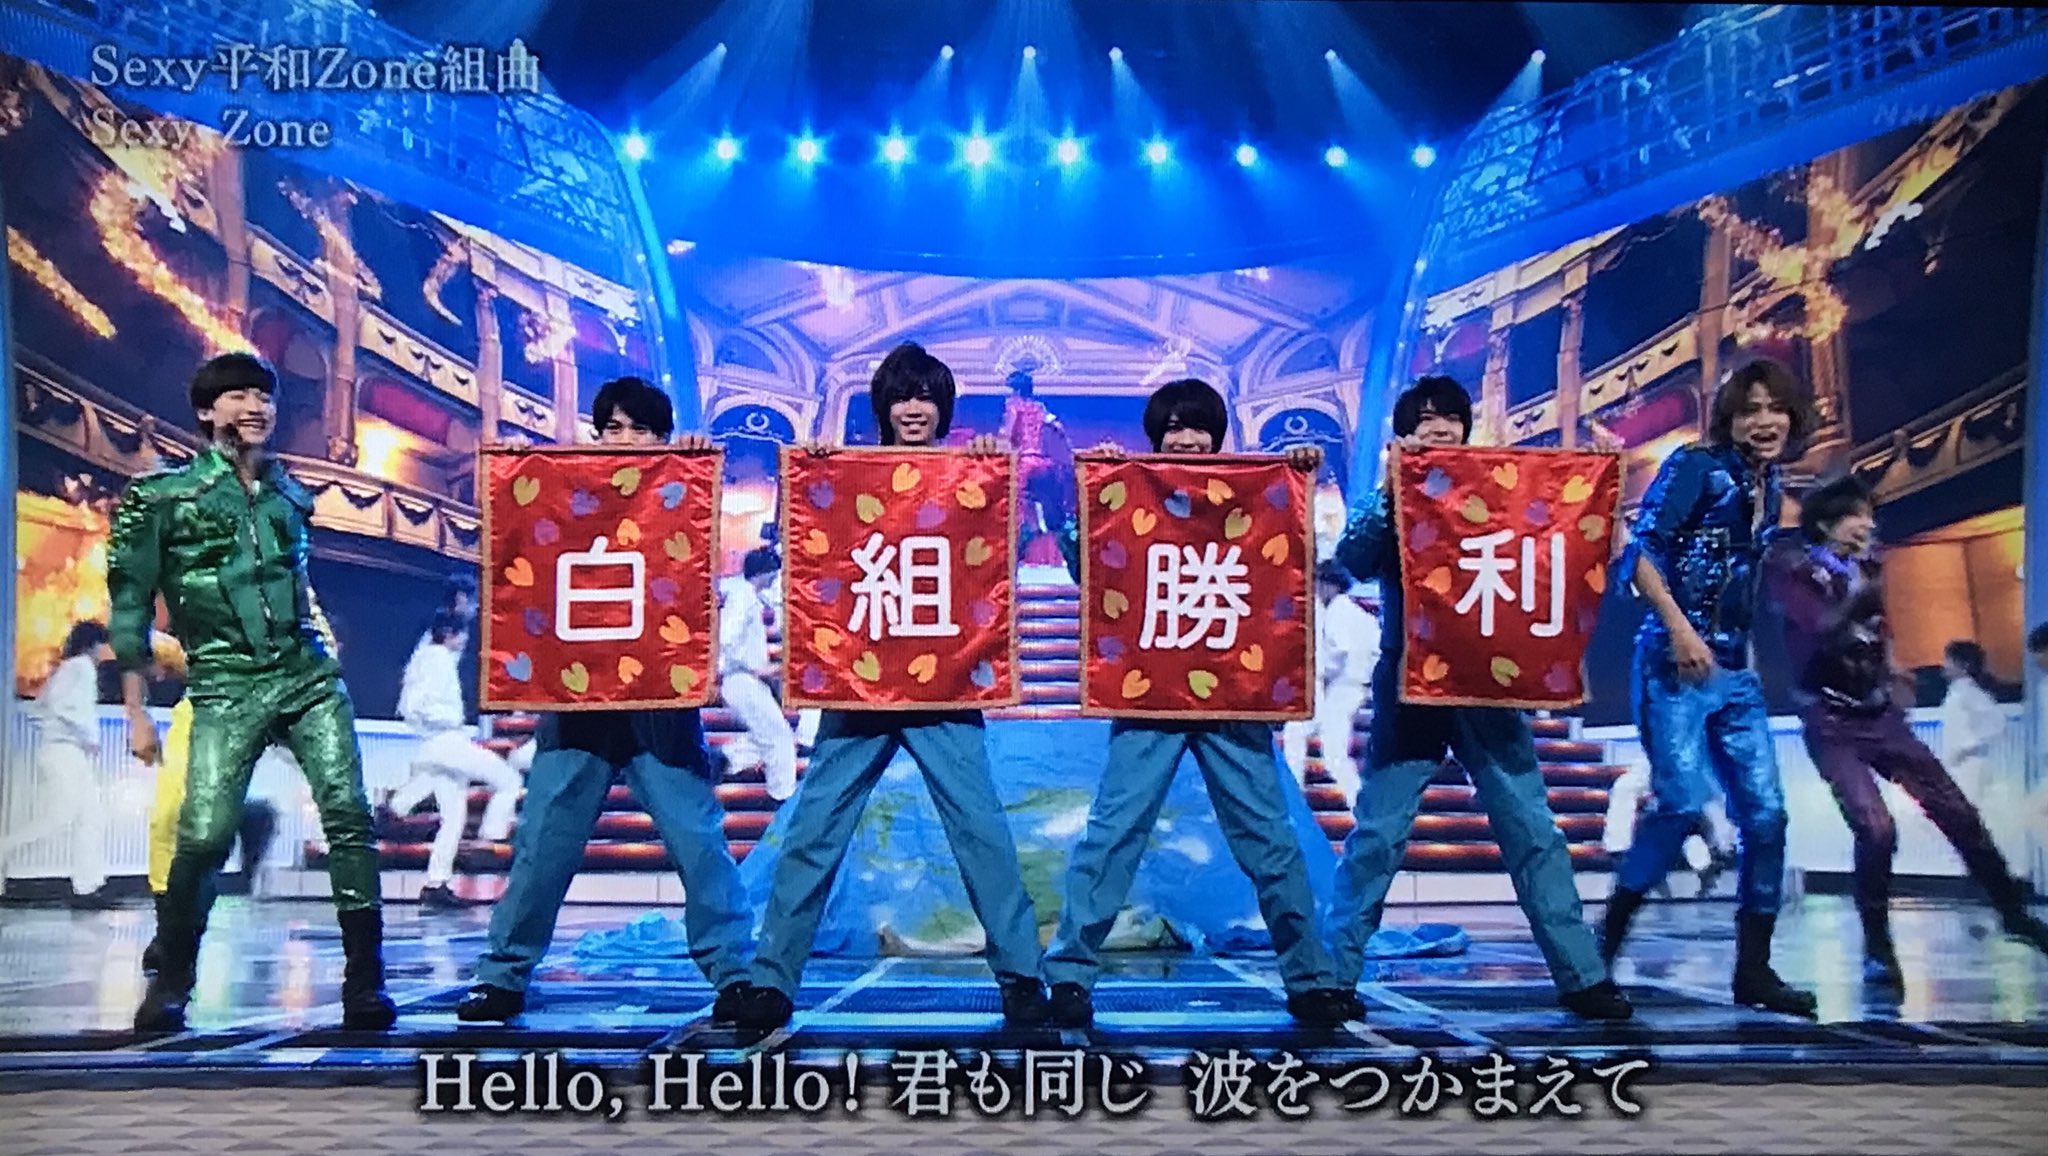 2013年第64回『NHK紅白歌合戦』に出場が予想された芸能人まとめ【北島三郎、miwa など】